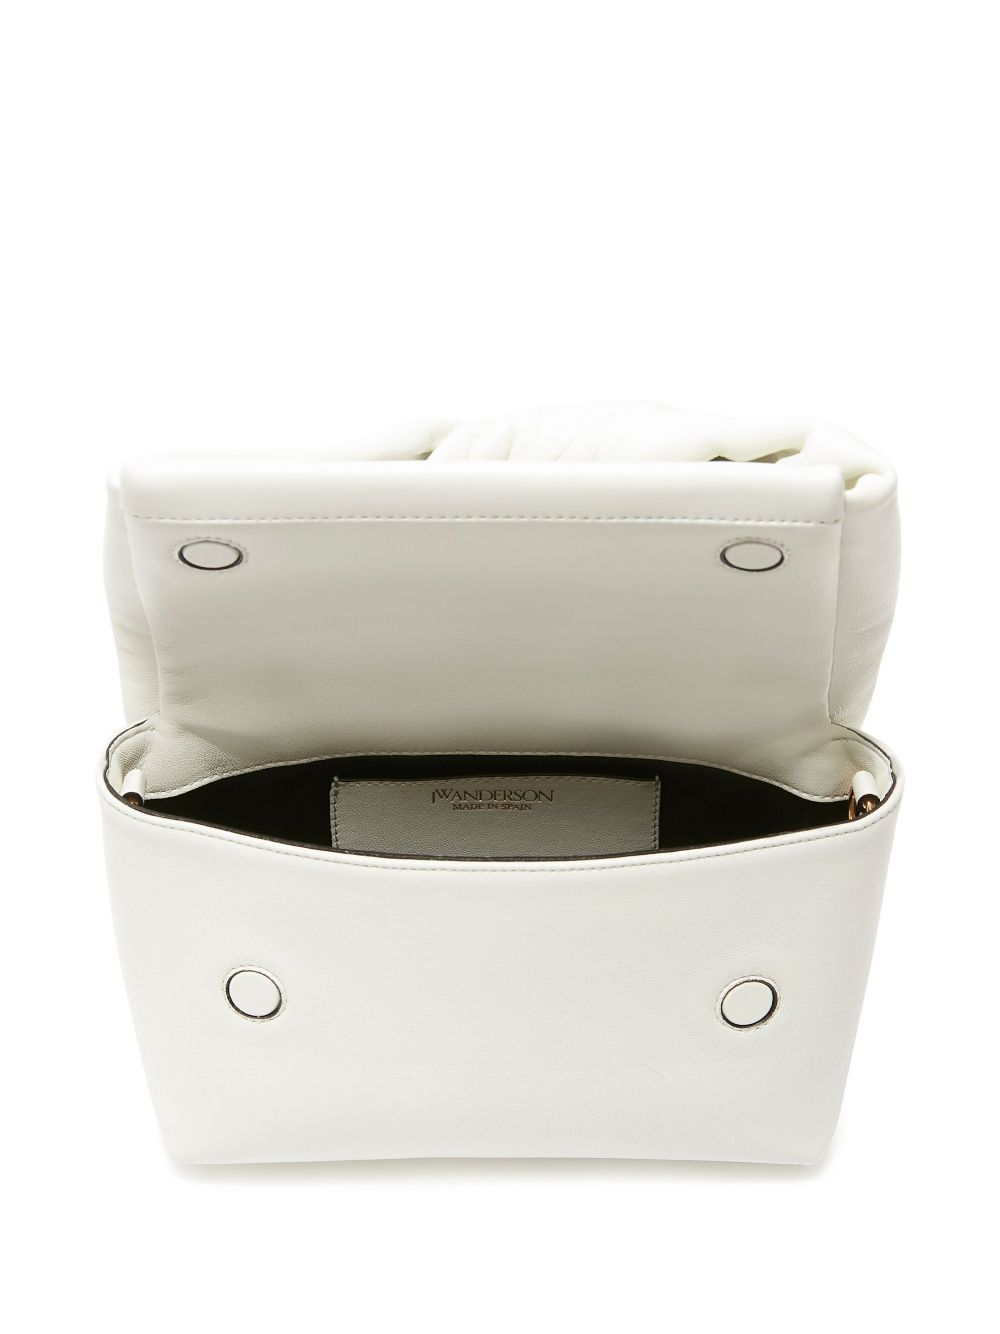 Túi xách thời trang màu trắng sang trọng cho phụ nữ FW23